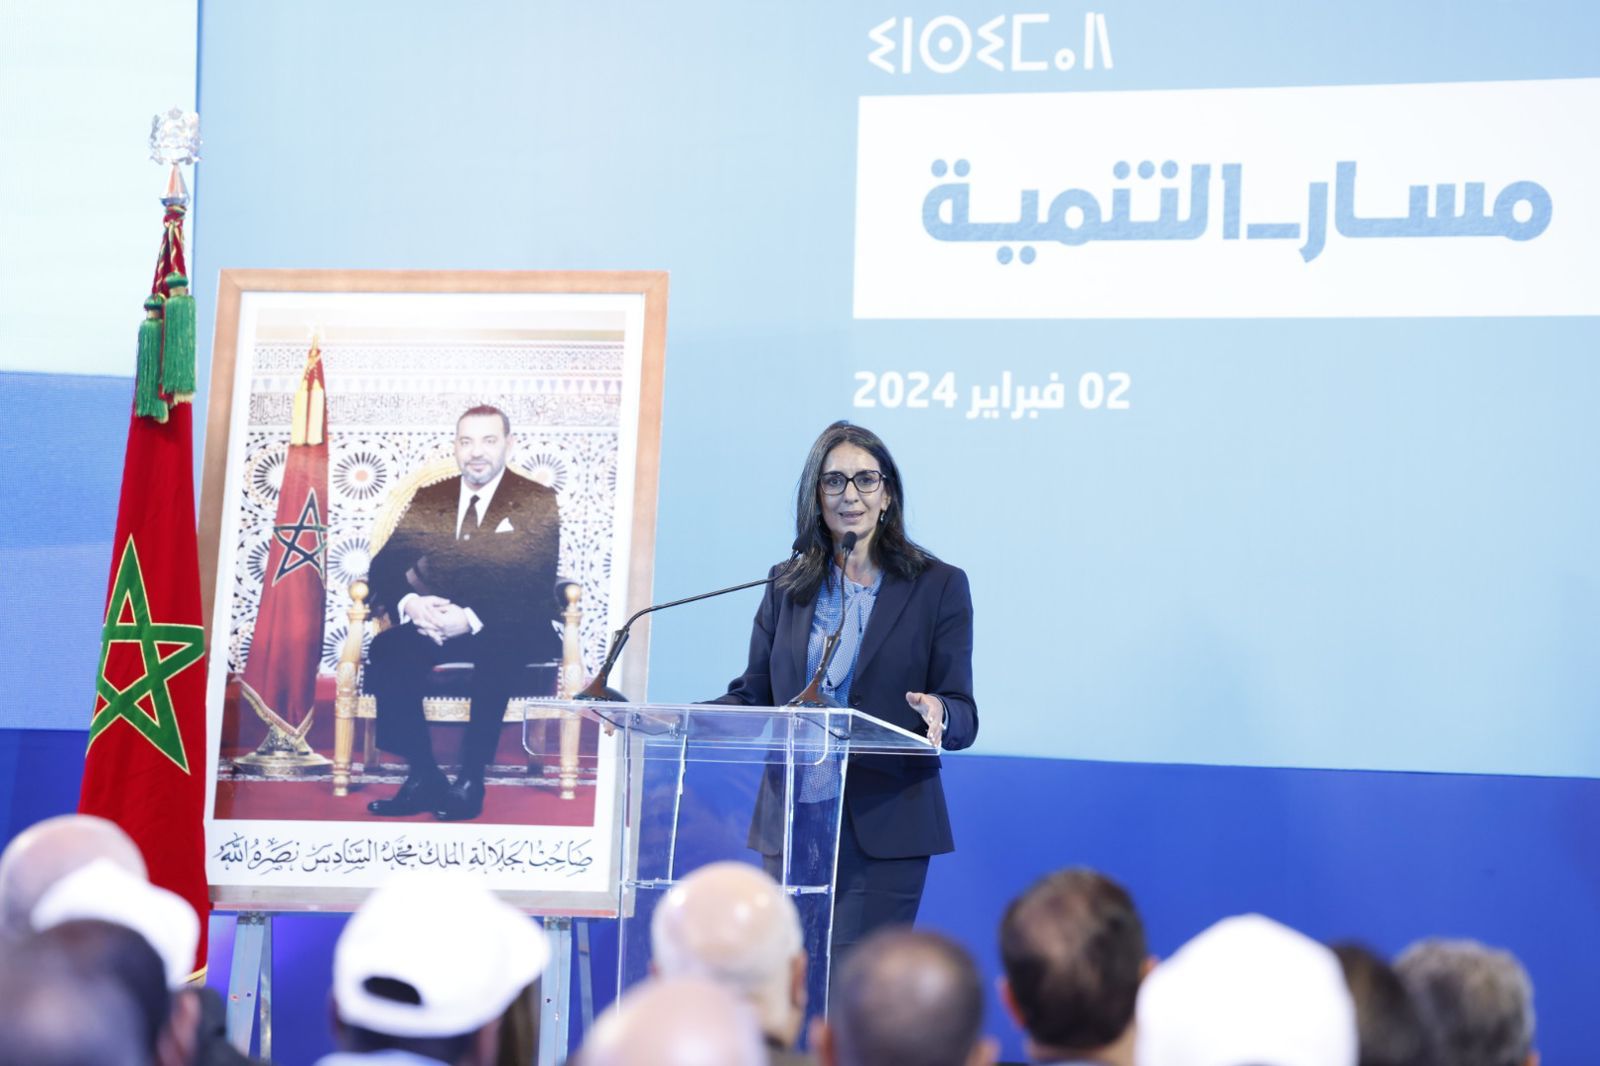 نادية فتاح تؤكد إصرار أخنوش على الالتزام بتنزيل البرنامج الحكومي